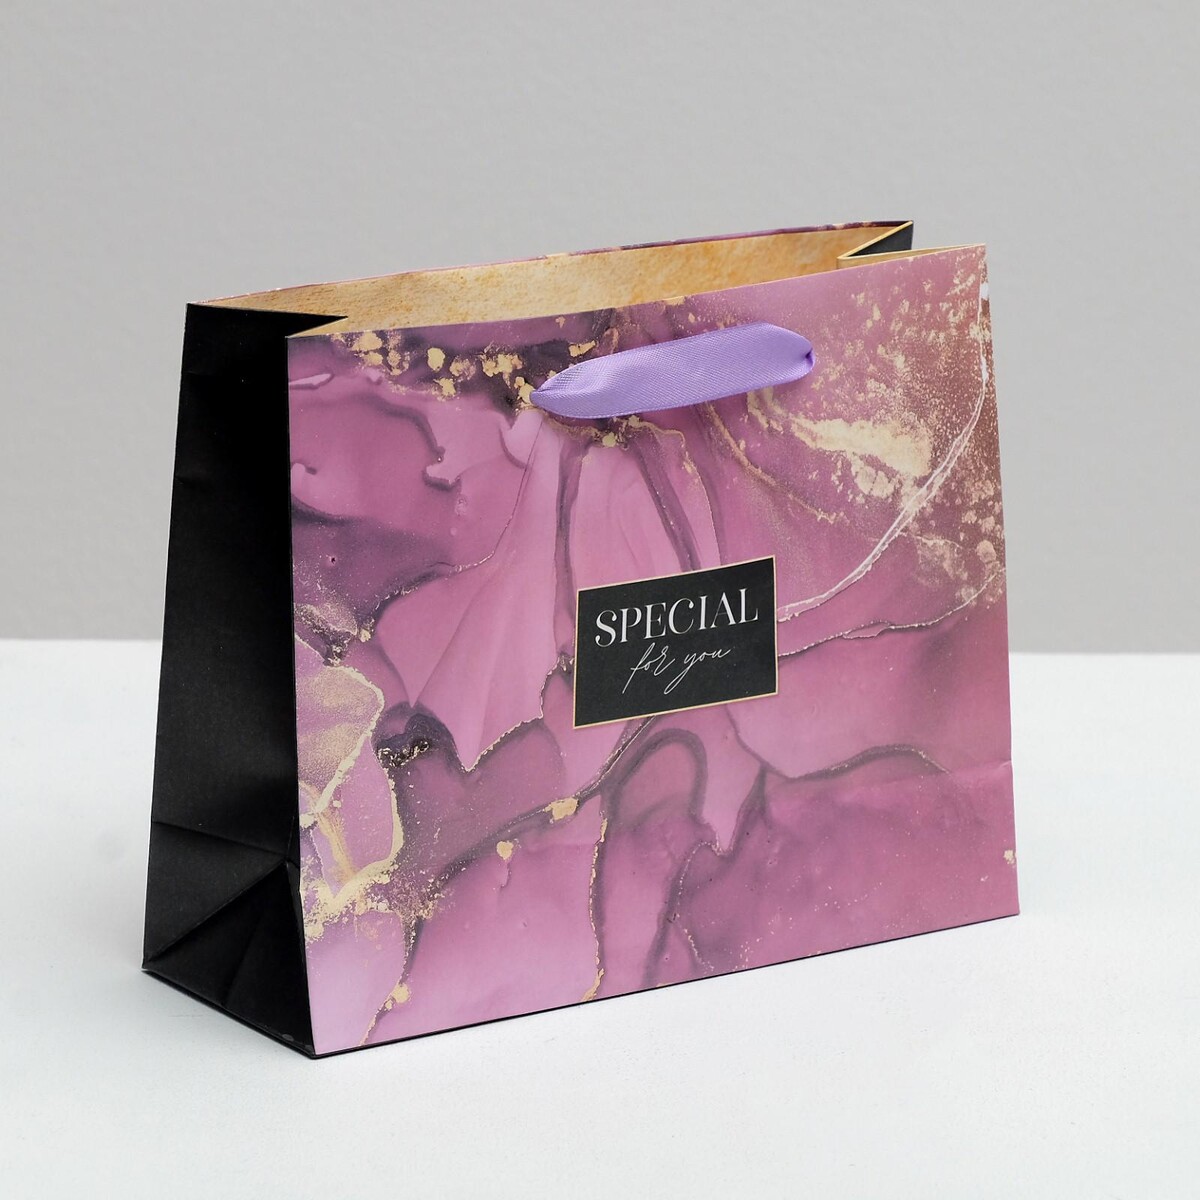 Пакет подарочный ламинированный горизонтальный, упаковка, коробка подарочная складная упаковка special for you 30 х 20 х 9 см